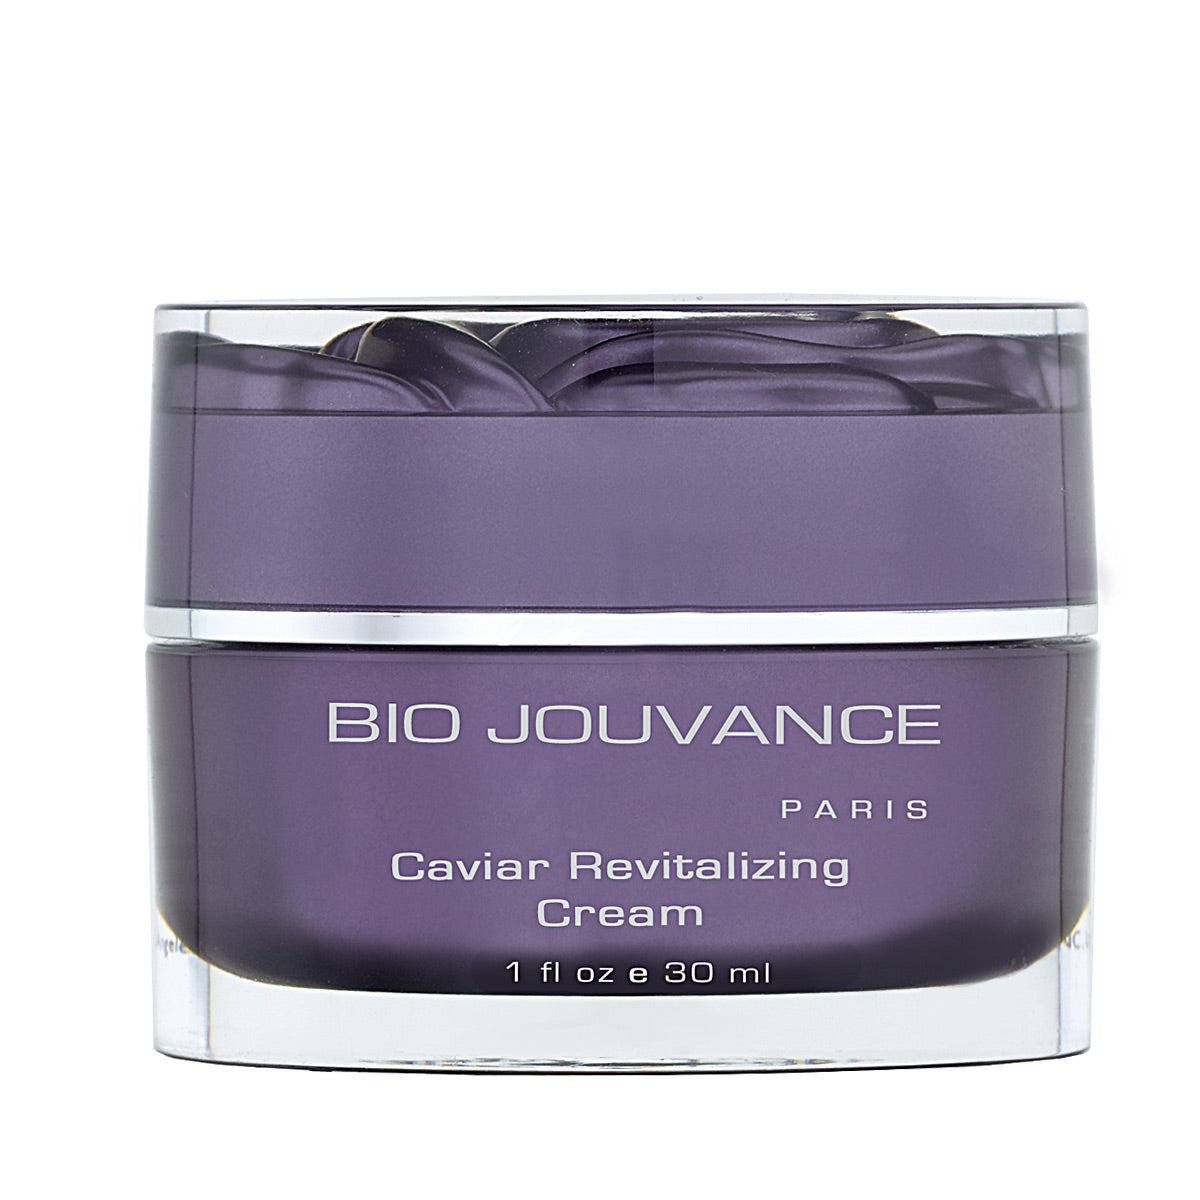 Caviar Revitalizing Cream